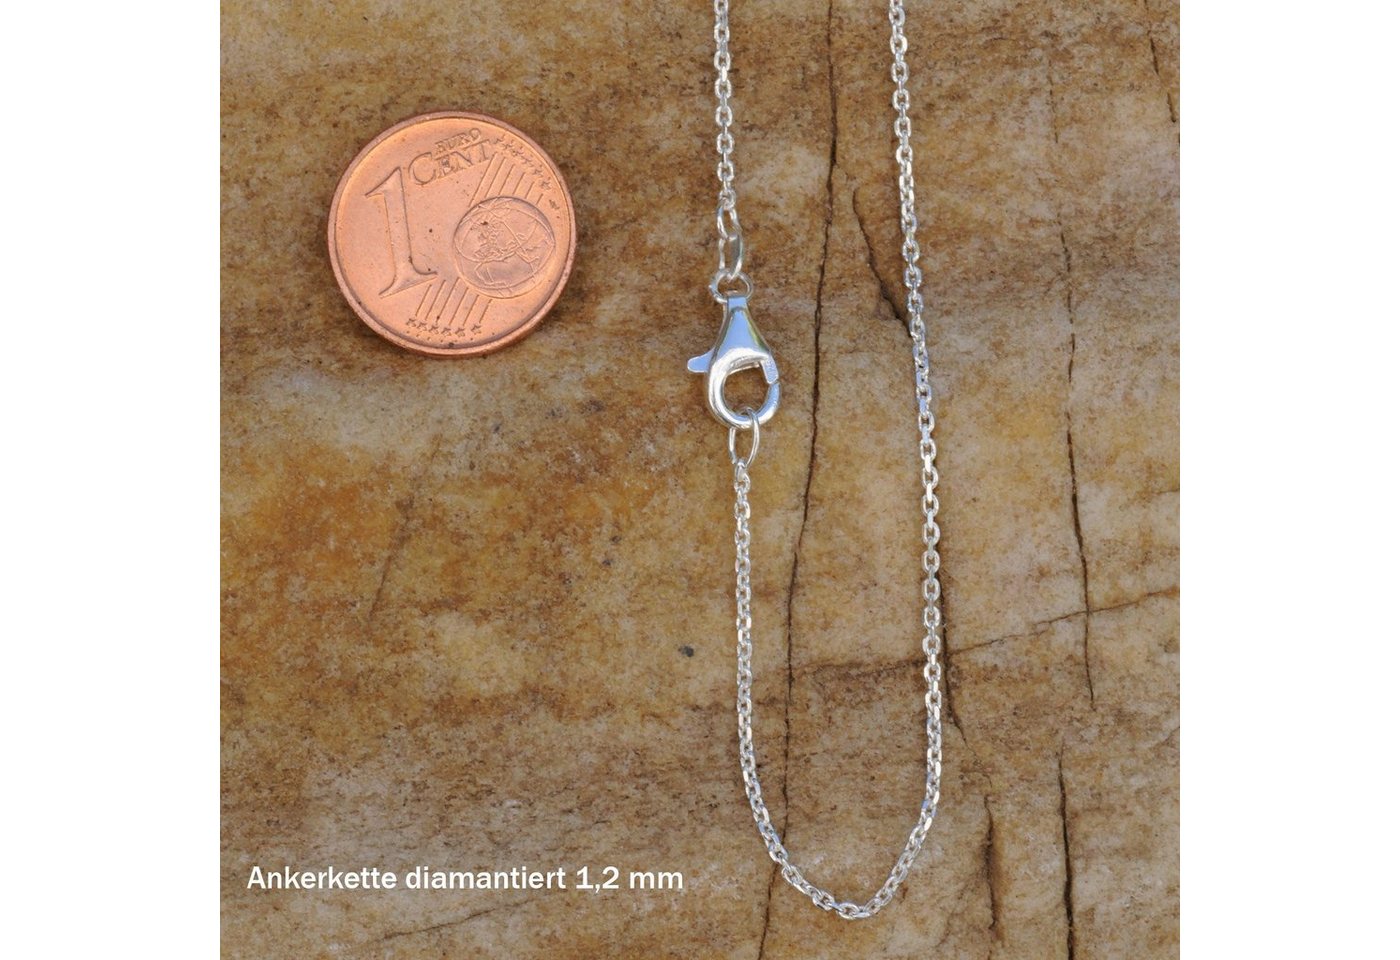 HOPLO Silberkette Ankerkette diamantiert Länge 40cm - Breite 1,2mm - 925 Silber von HOPLO